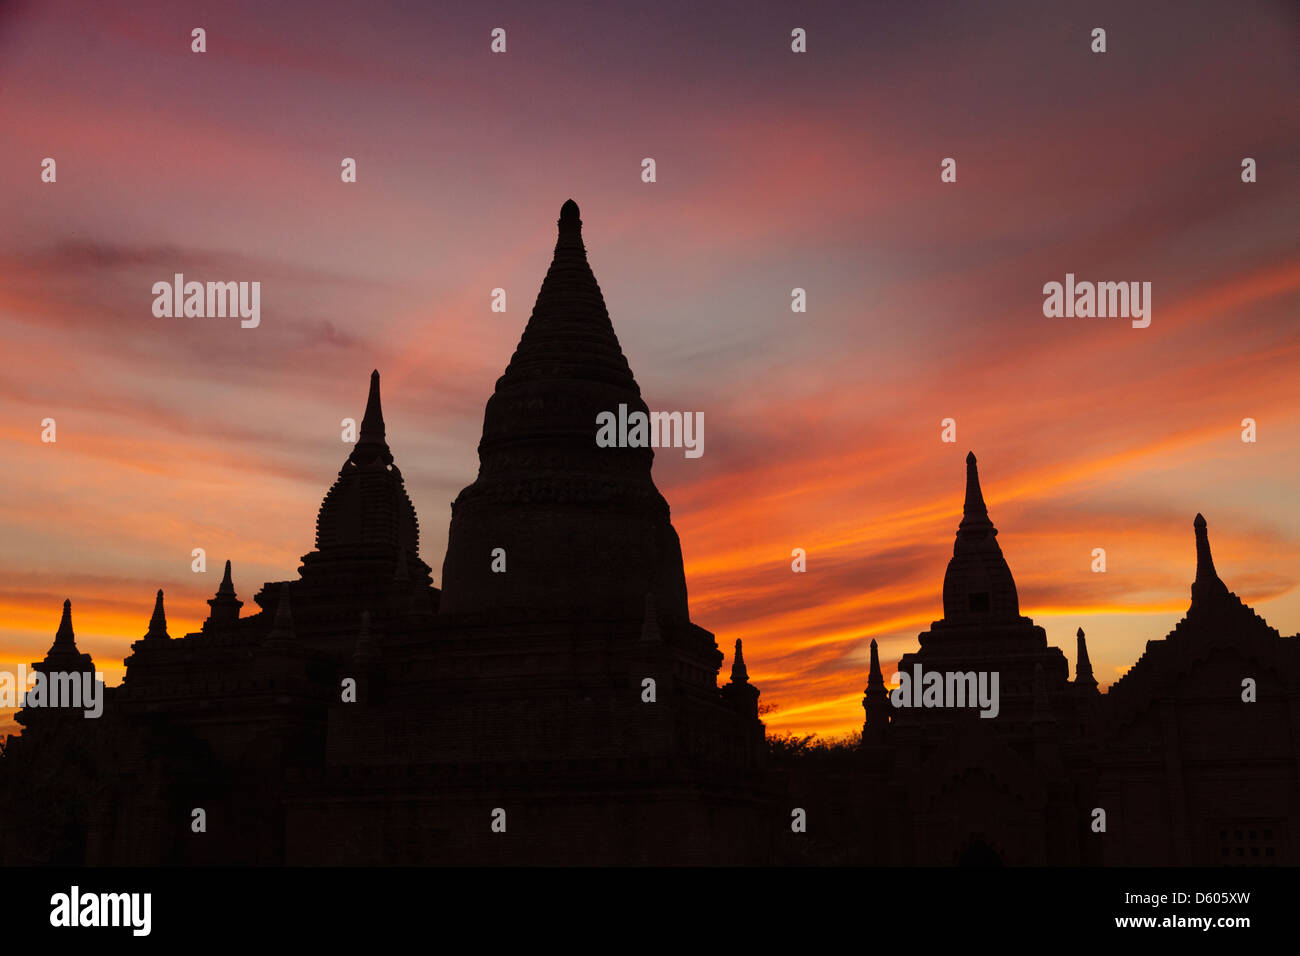 Die Stupas und Pagoden von Bagan, Myanmar, Silhouette nach Sonnenuntergang 3 Stockfoto